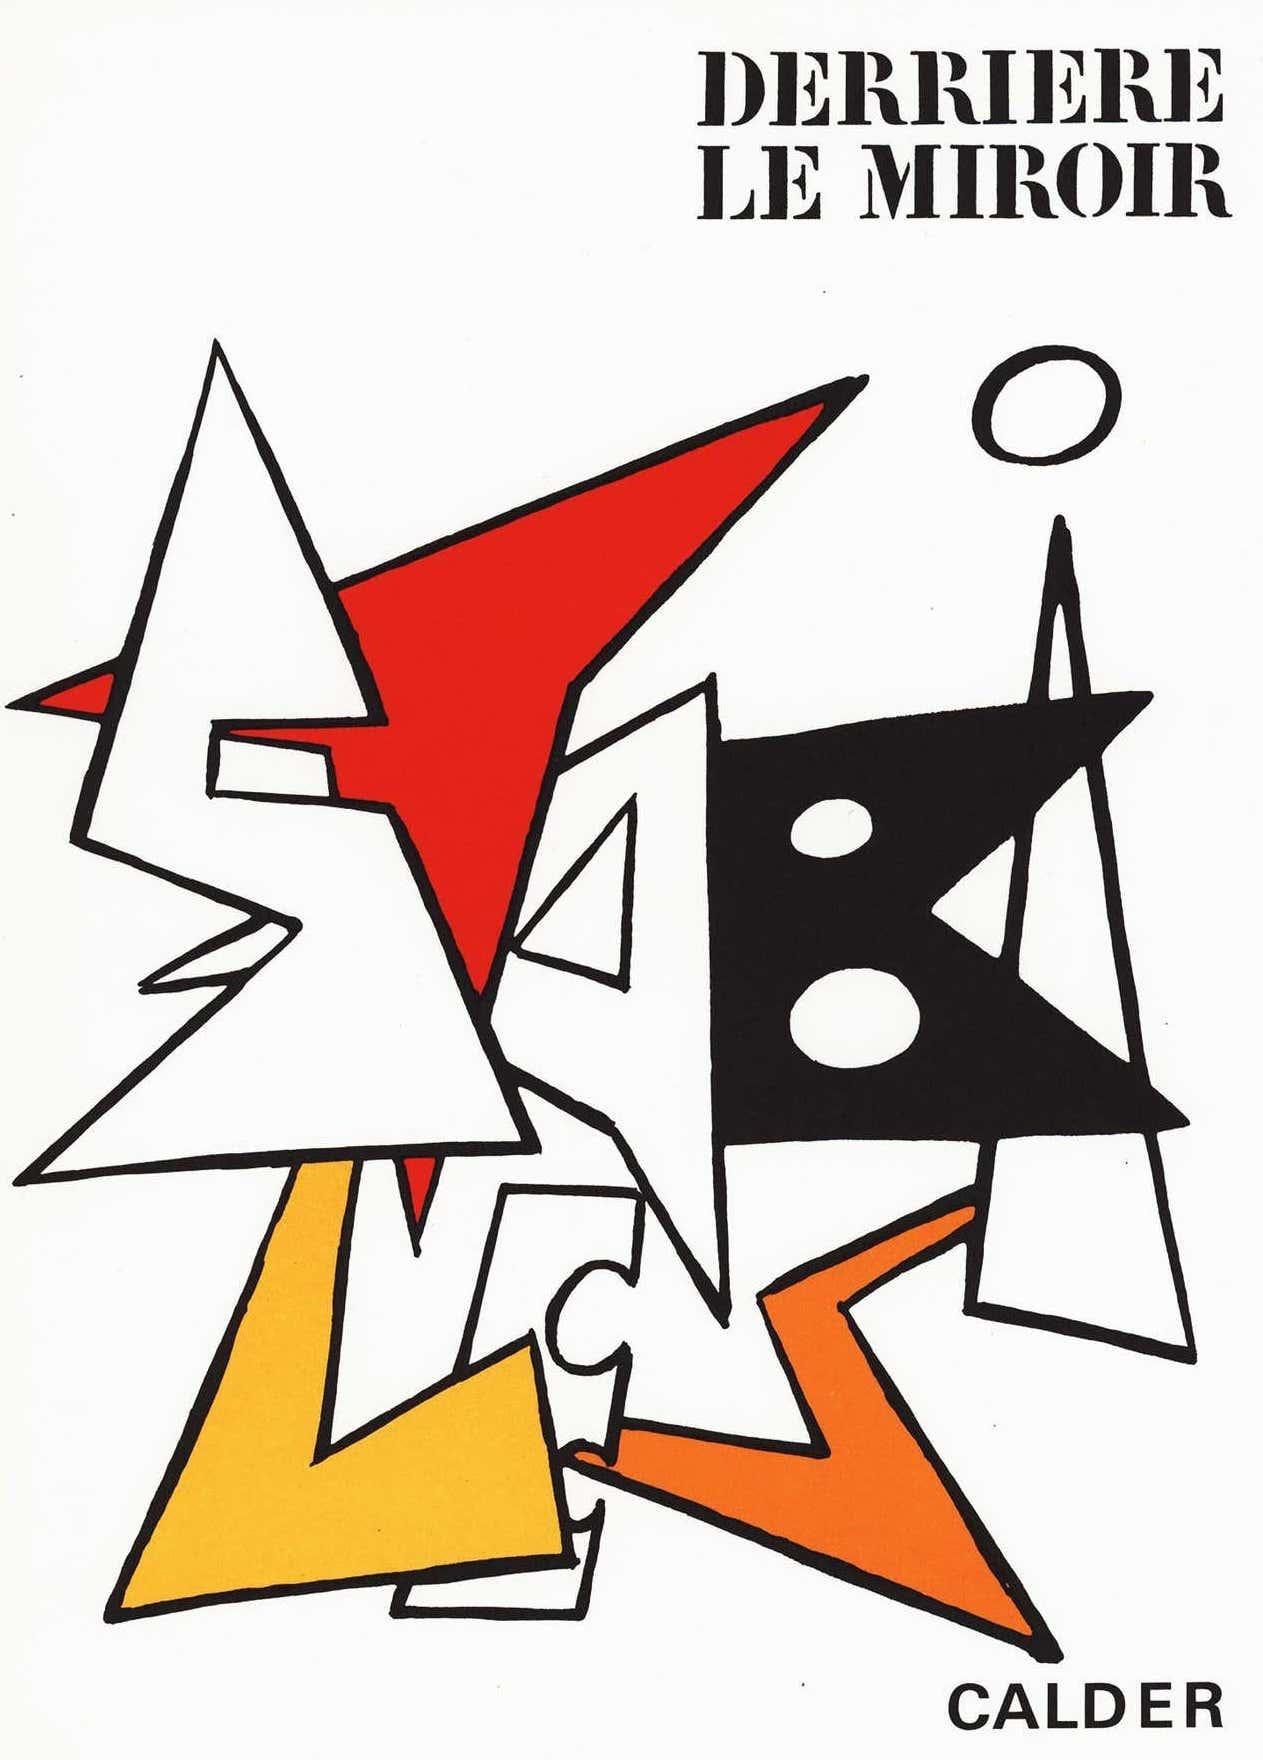 Lithografischer Umschlag von Alexander Calder aus den 1960er Jahren (aus Derrière le miroir) – Print von (after) Alexander Calder